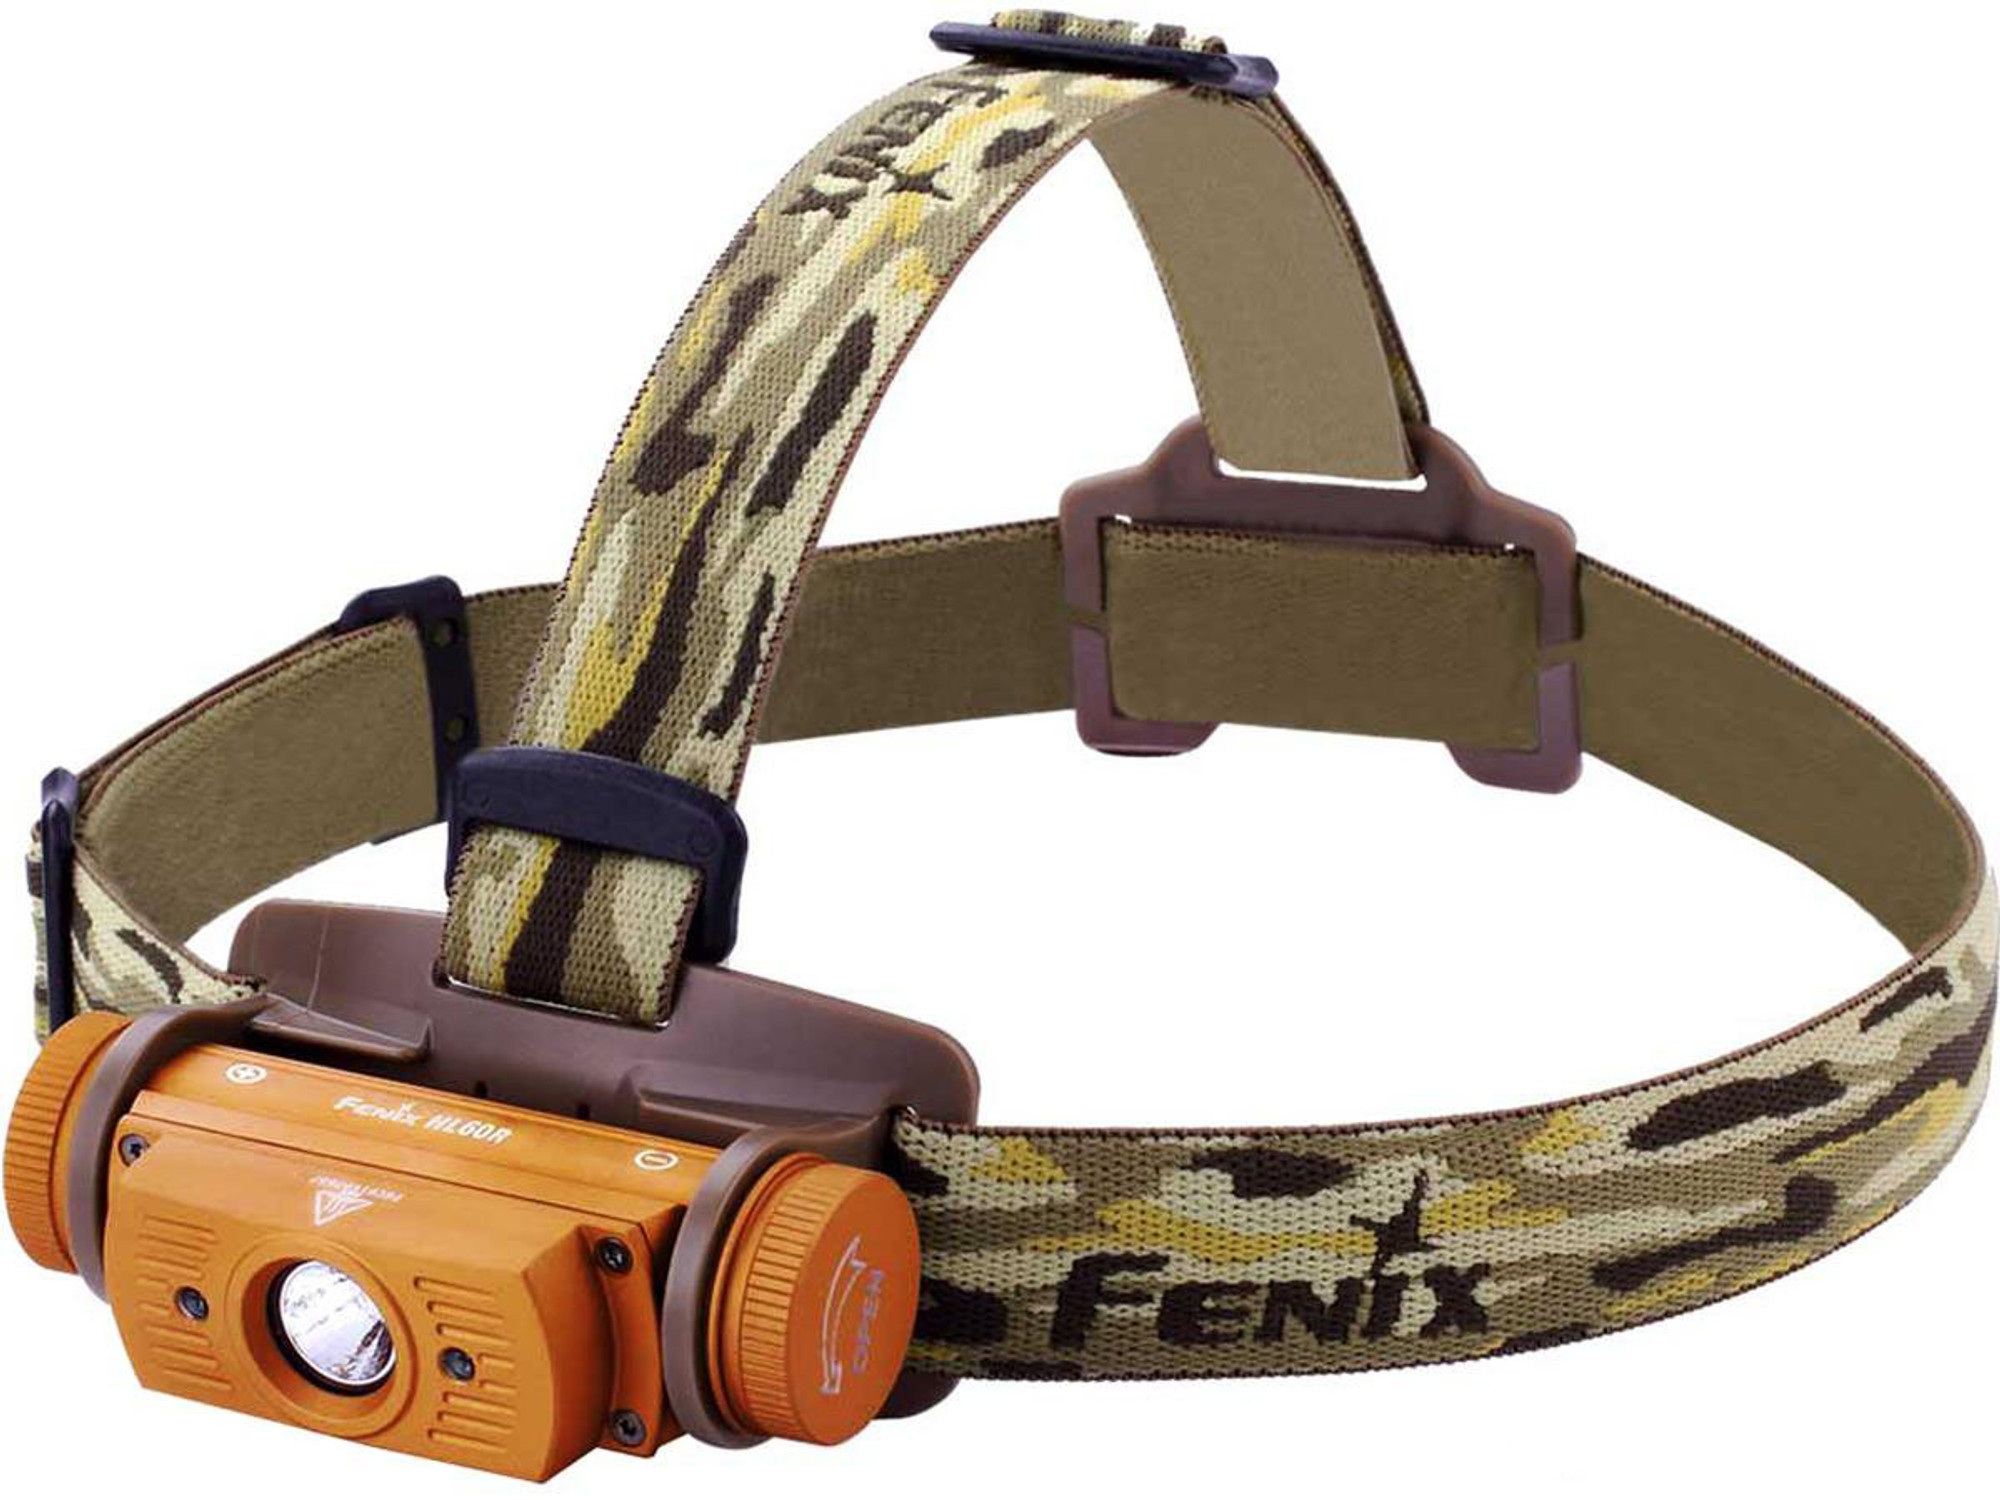 Fenix HL60R 950 Lumen Rechargeable Headlamp (Color: Desert Camo)